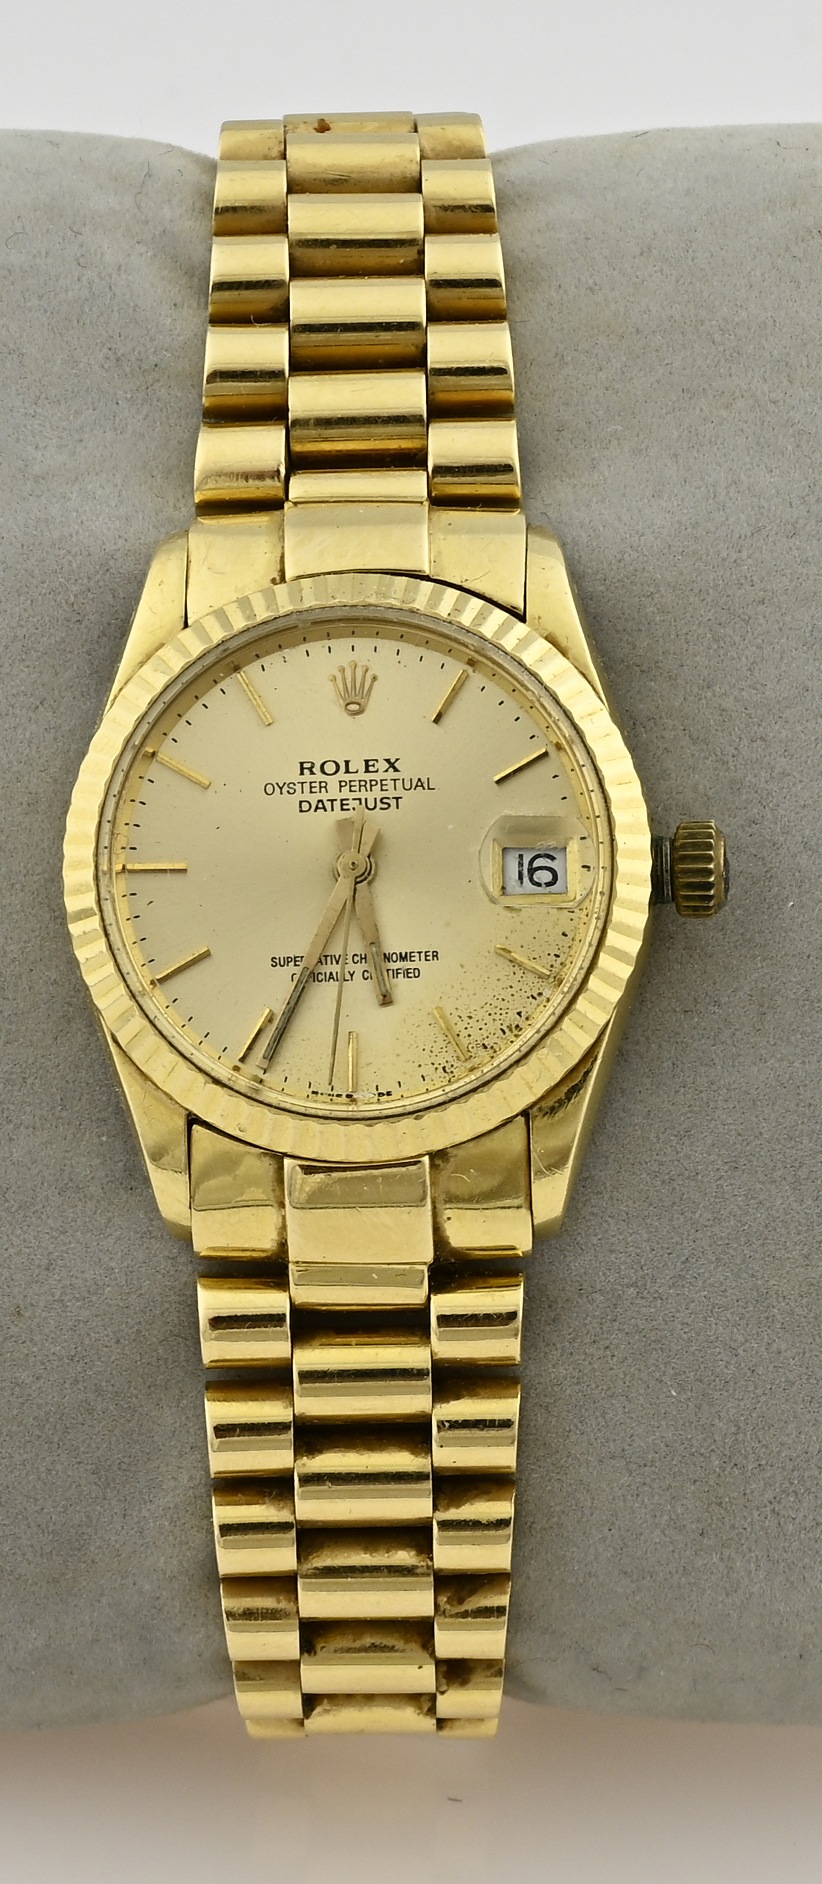 Gouden Rolex horloge